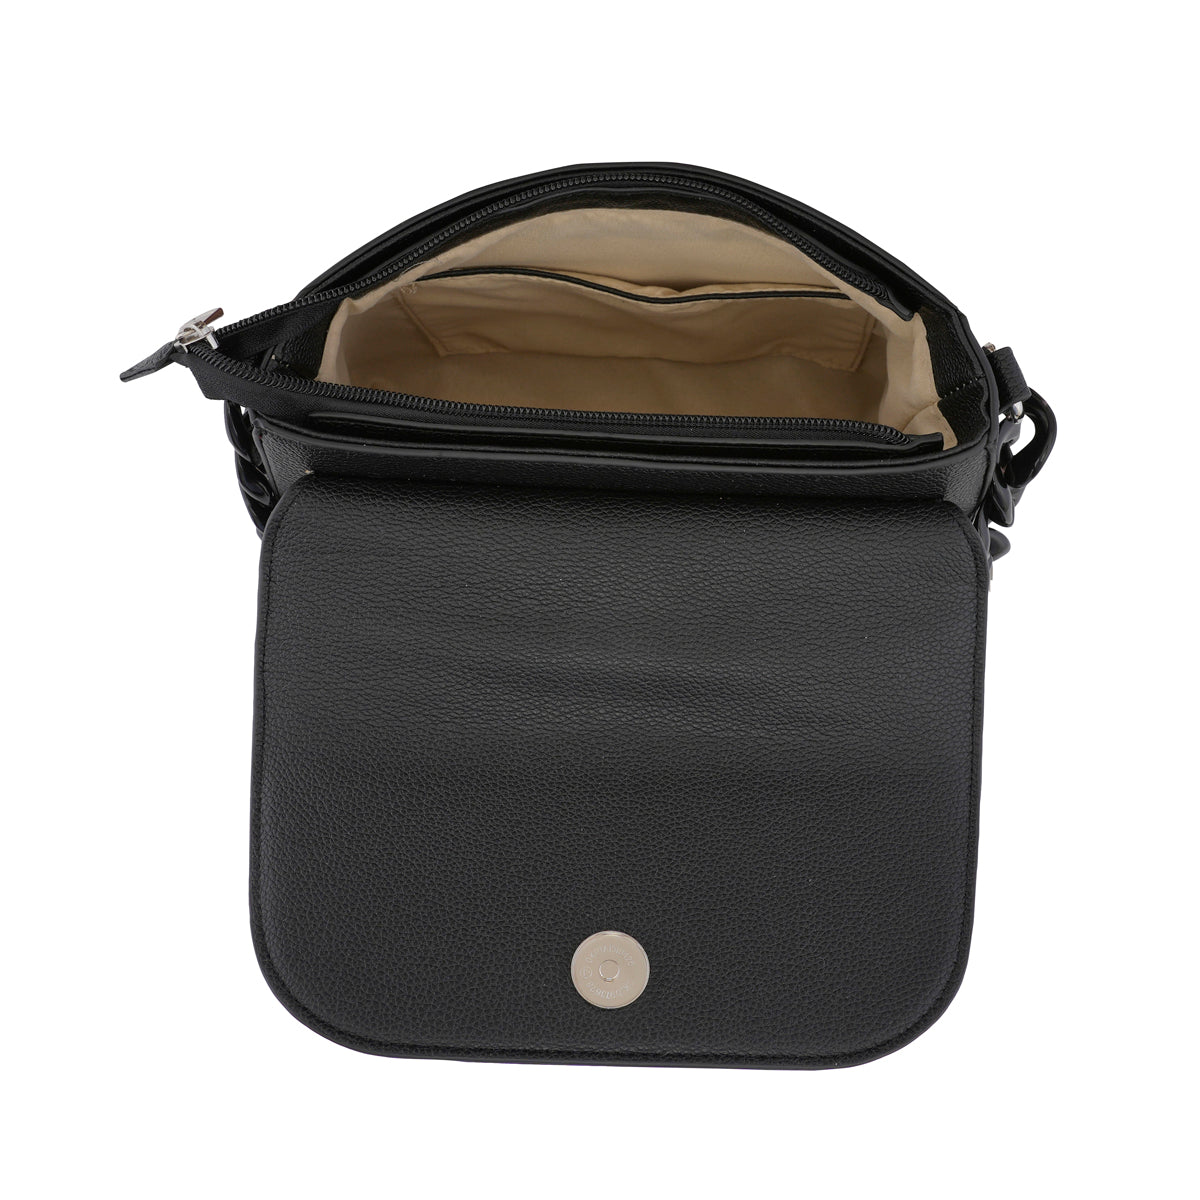 Aeropostale Rena Mini Satchel Handbag Black